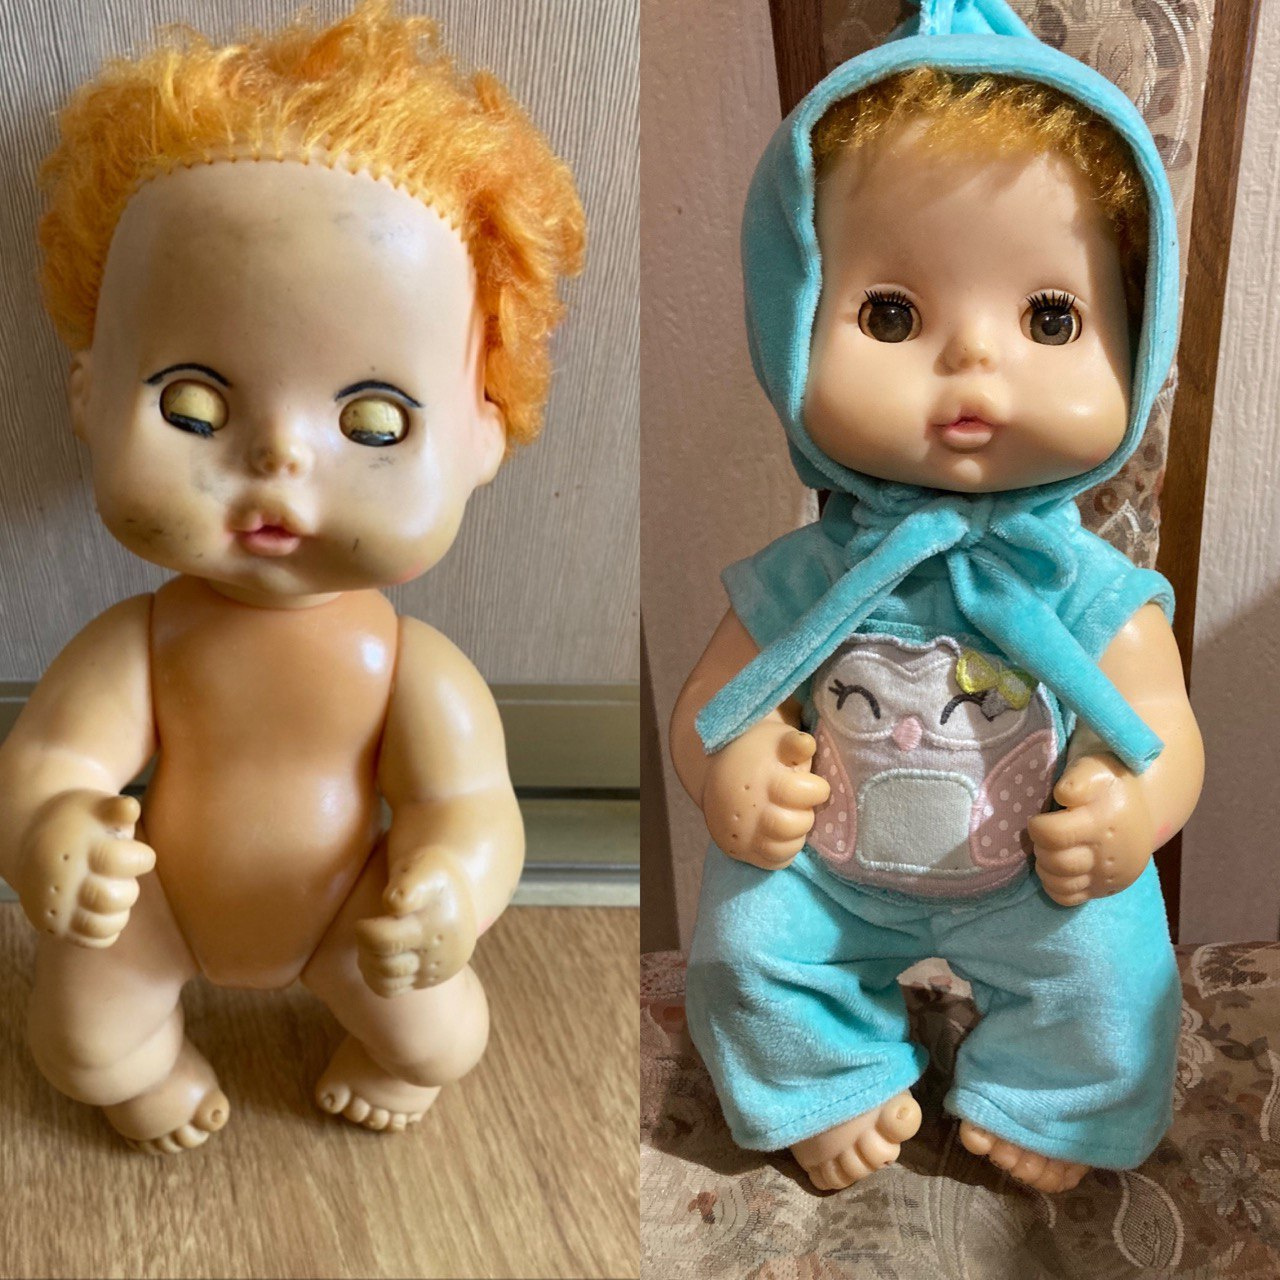 Результат до и после. Посмотрите, как куклы преображаются!